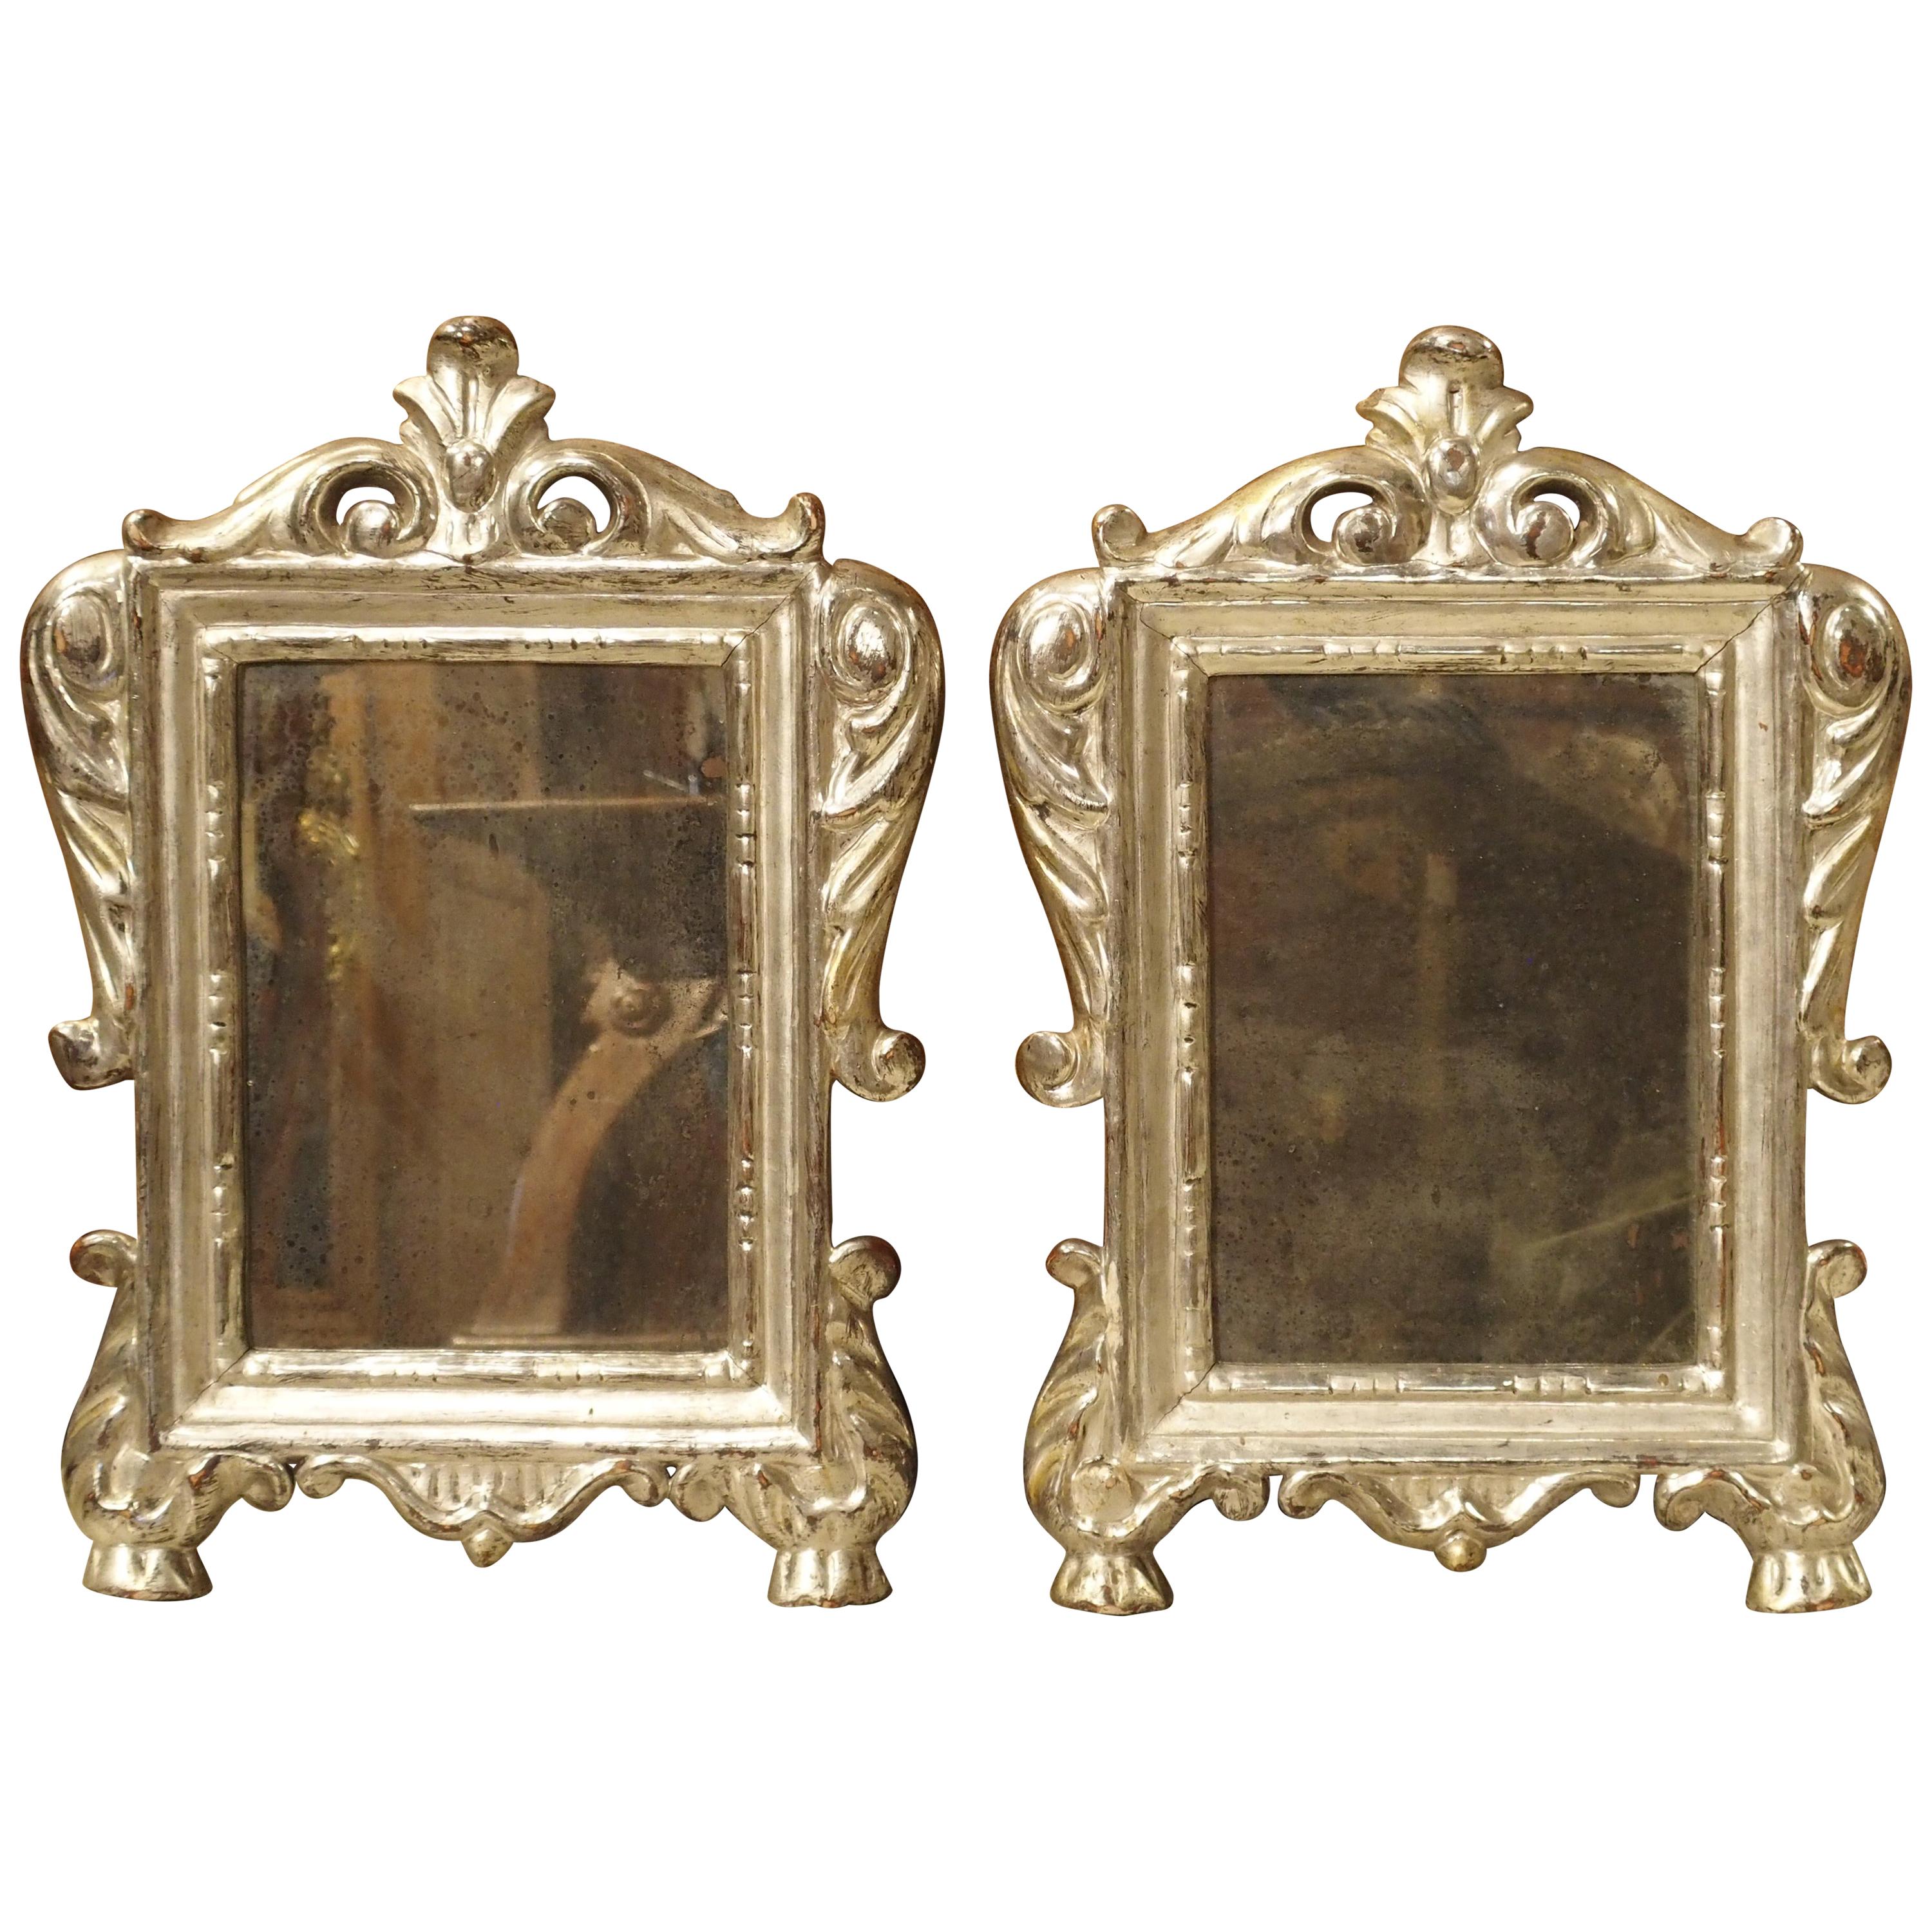 Paire de petits miroirs à feuilles d'argent d'Italie du 18ème siècle